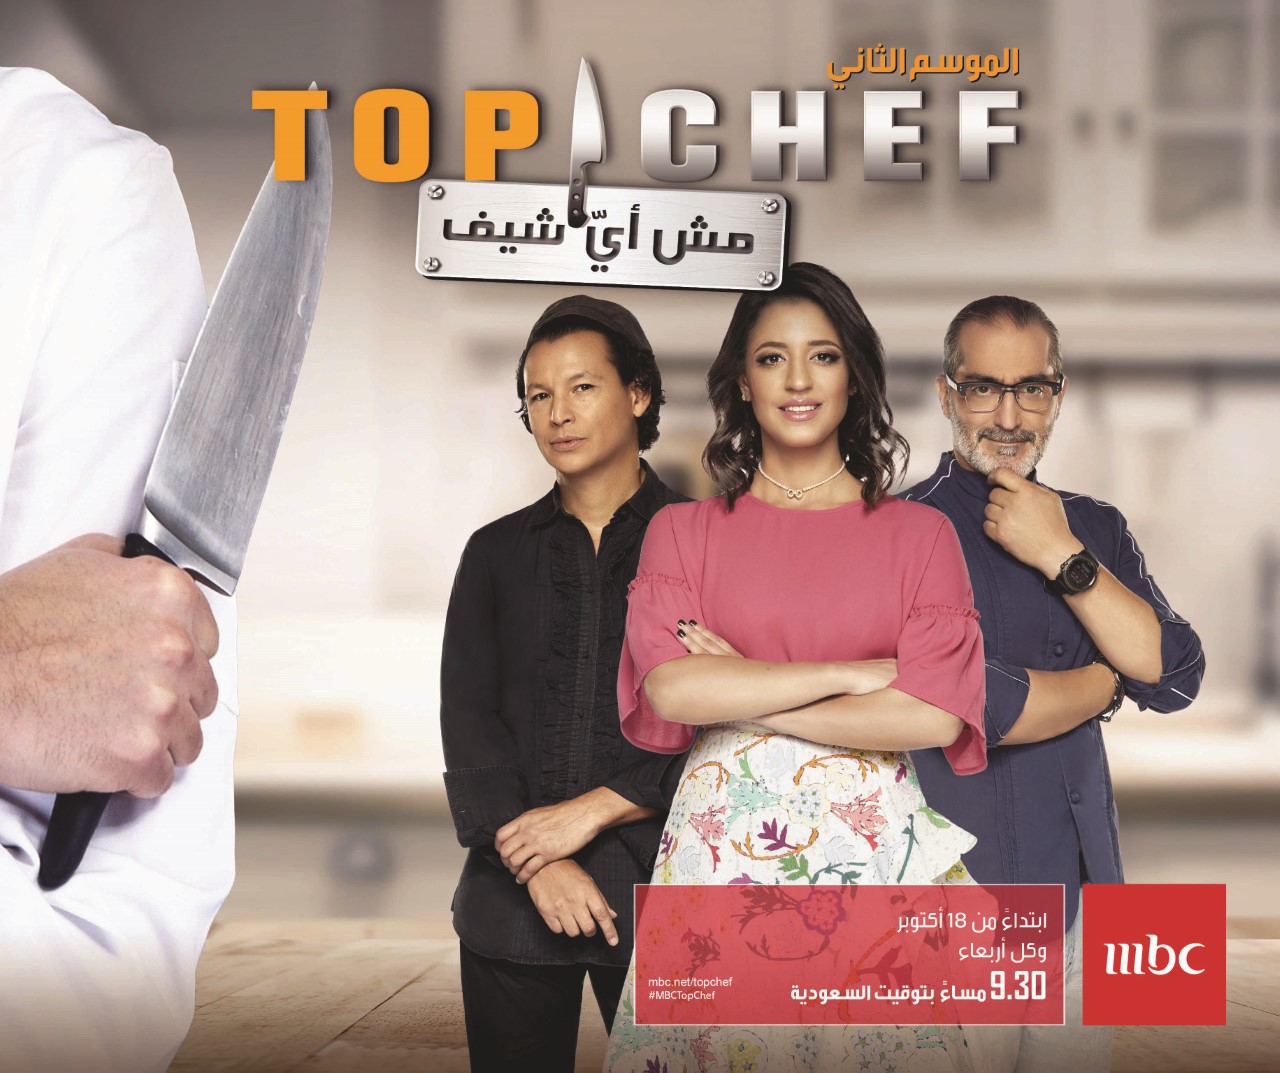 الثاني من "Top Chef" على نارٍ حامية مع طهاة يتنافسون "عالسكّين"... ضمن حلقات مشوّقة على MBC1 - ChouFiJdid.com